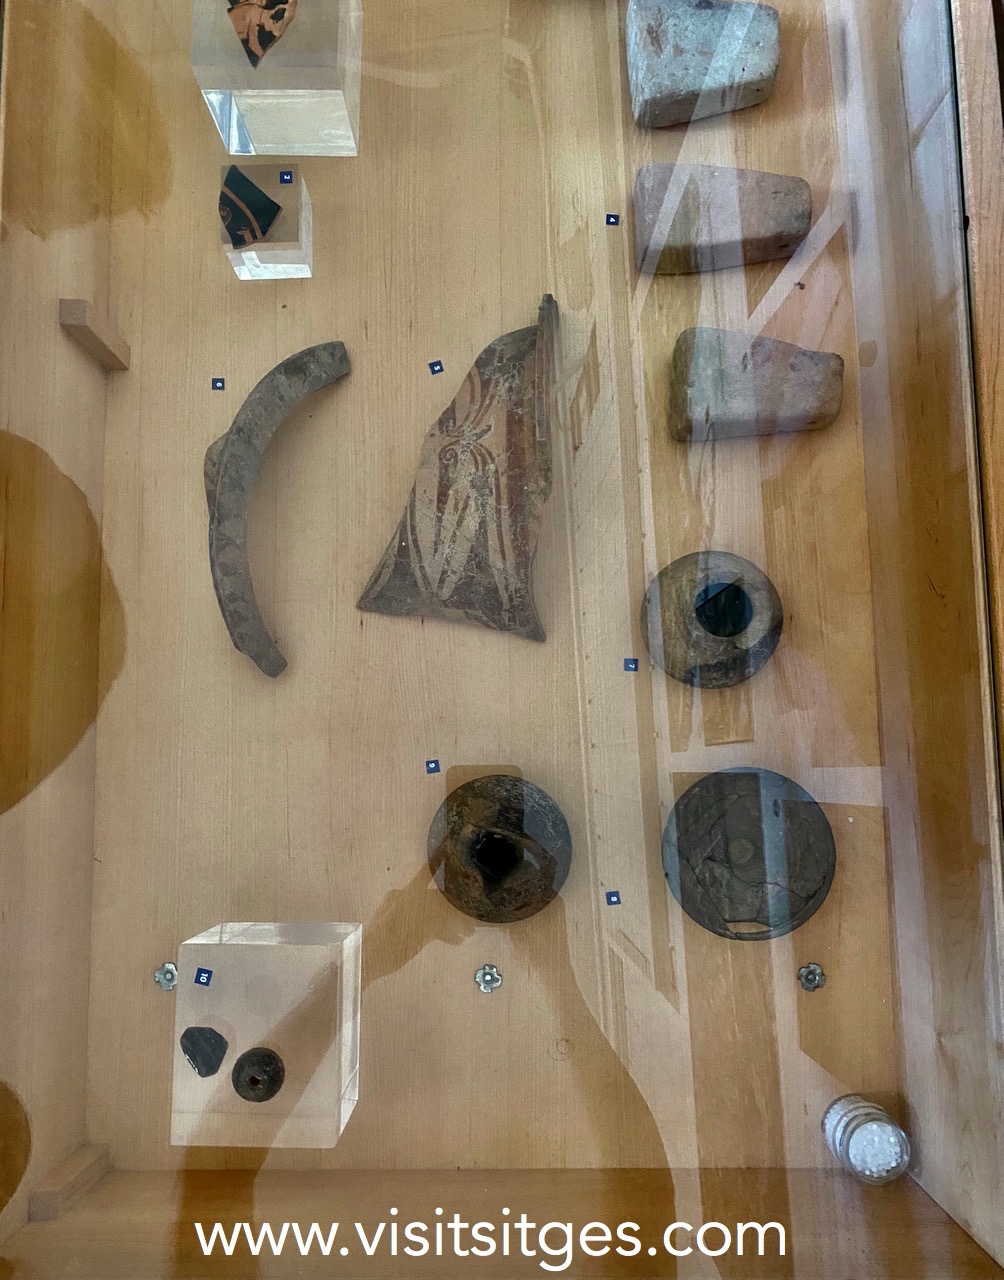 Visites arqueològiques al Puig de Sitges i estrena de l’espai museístic